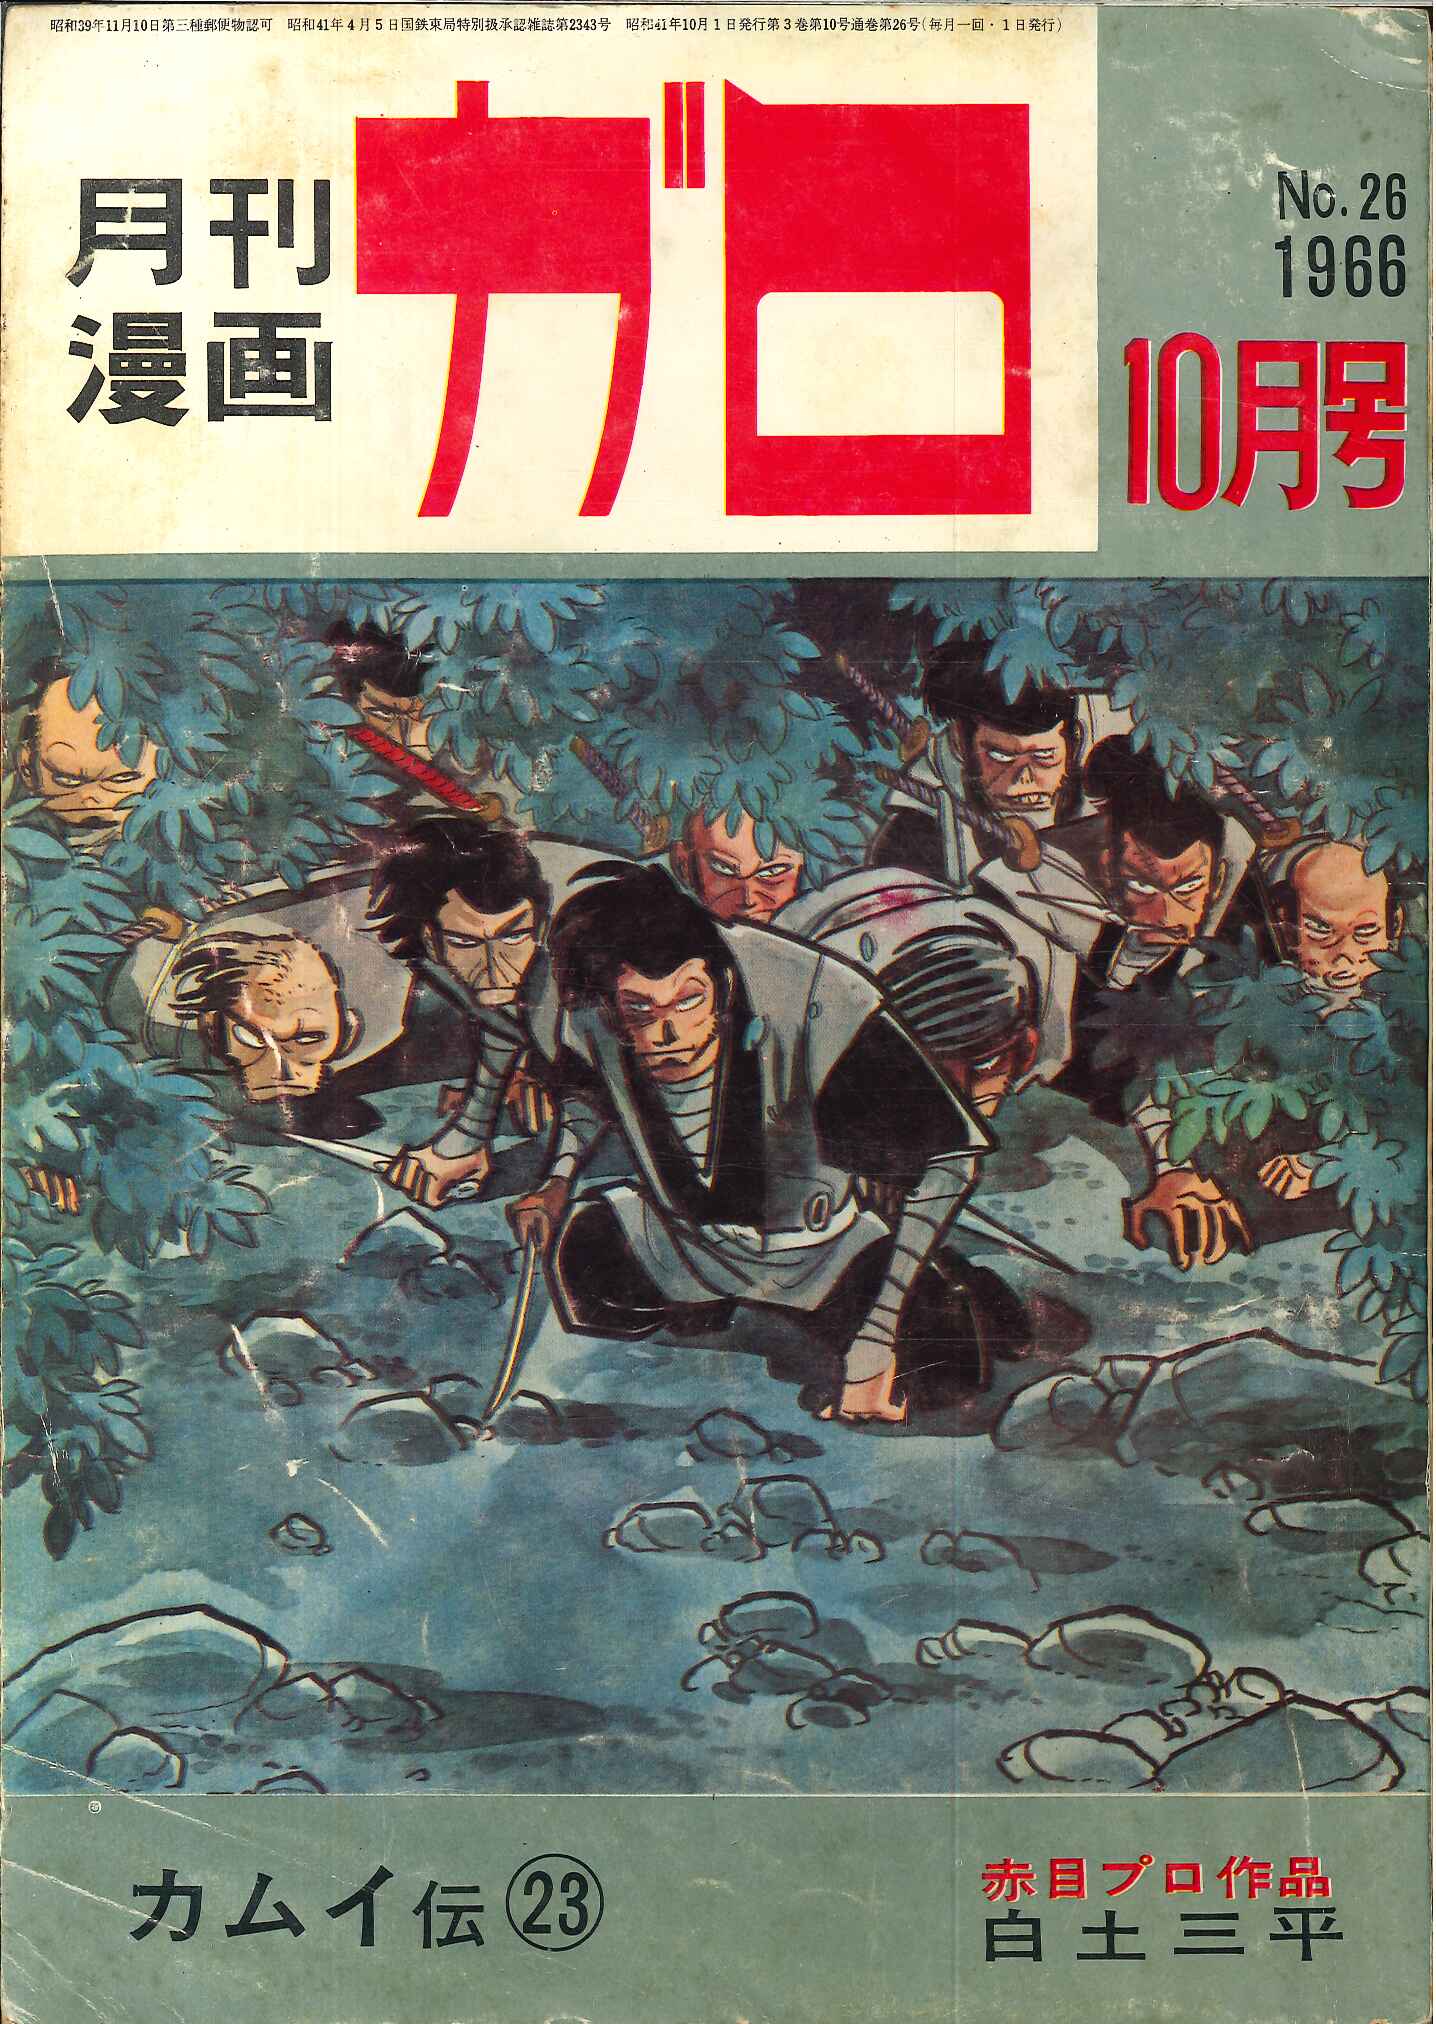 青林堂 1966年(昭和41年)の漫画雑誌 月刊ガロ1966年(昭和41年)10月号